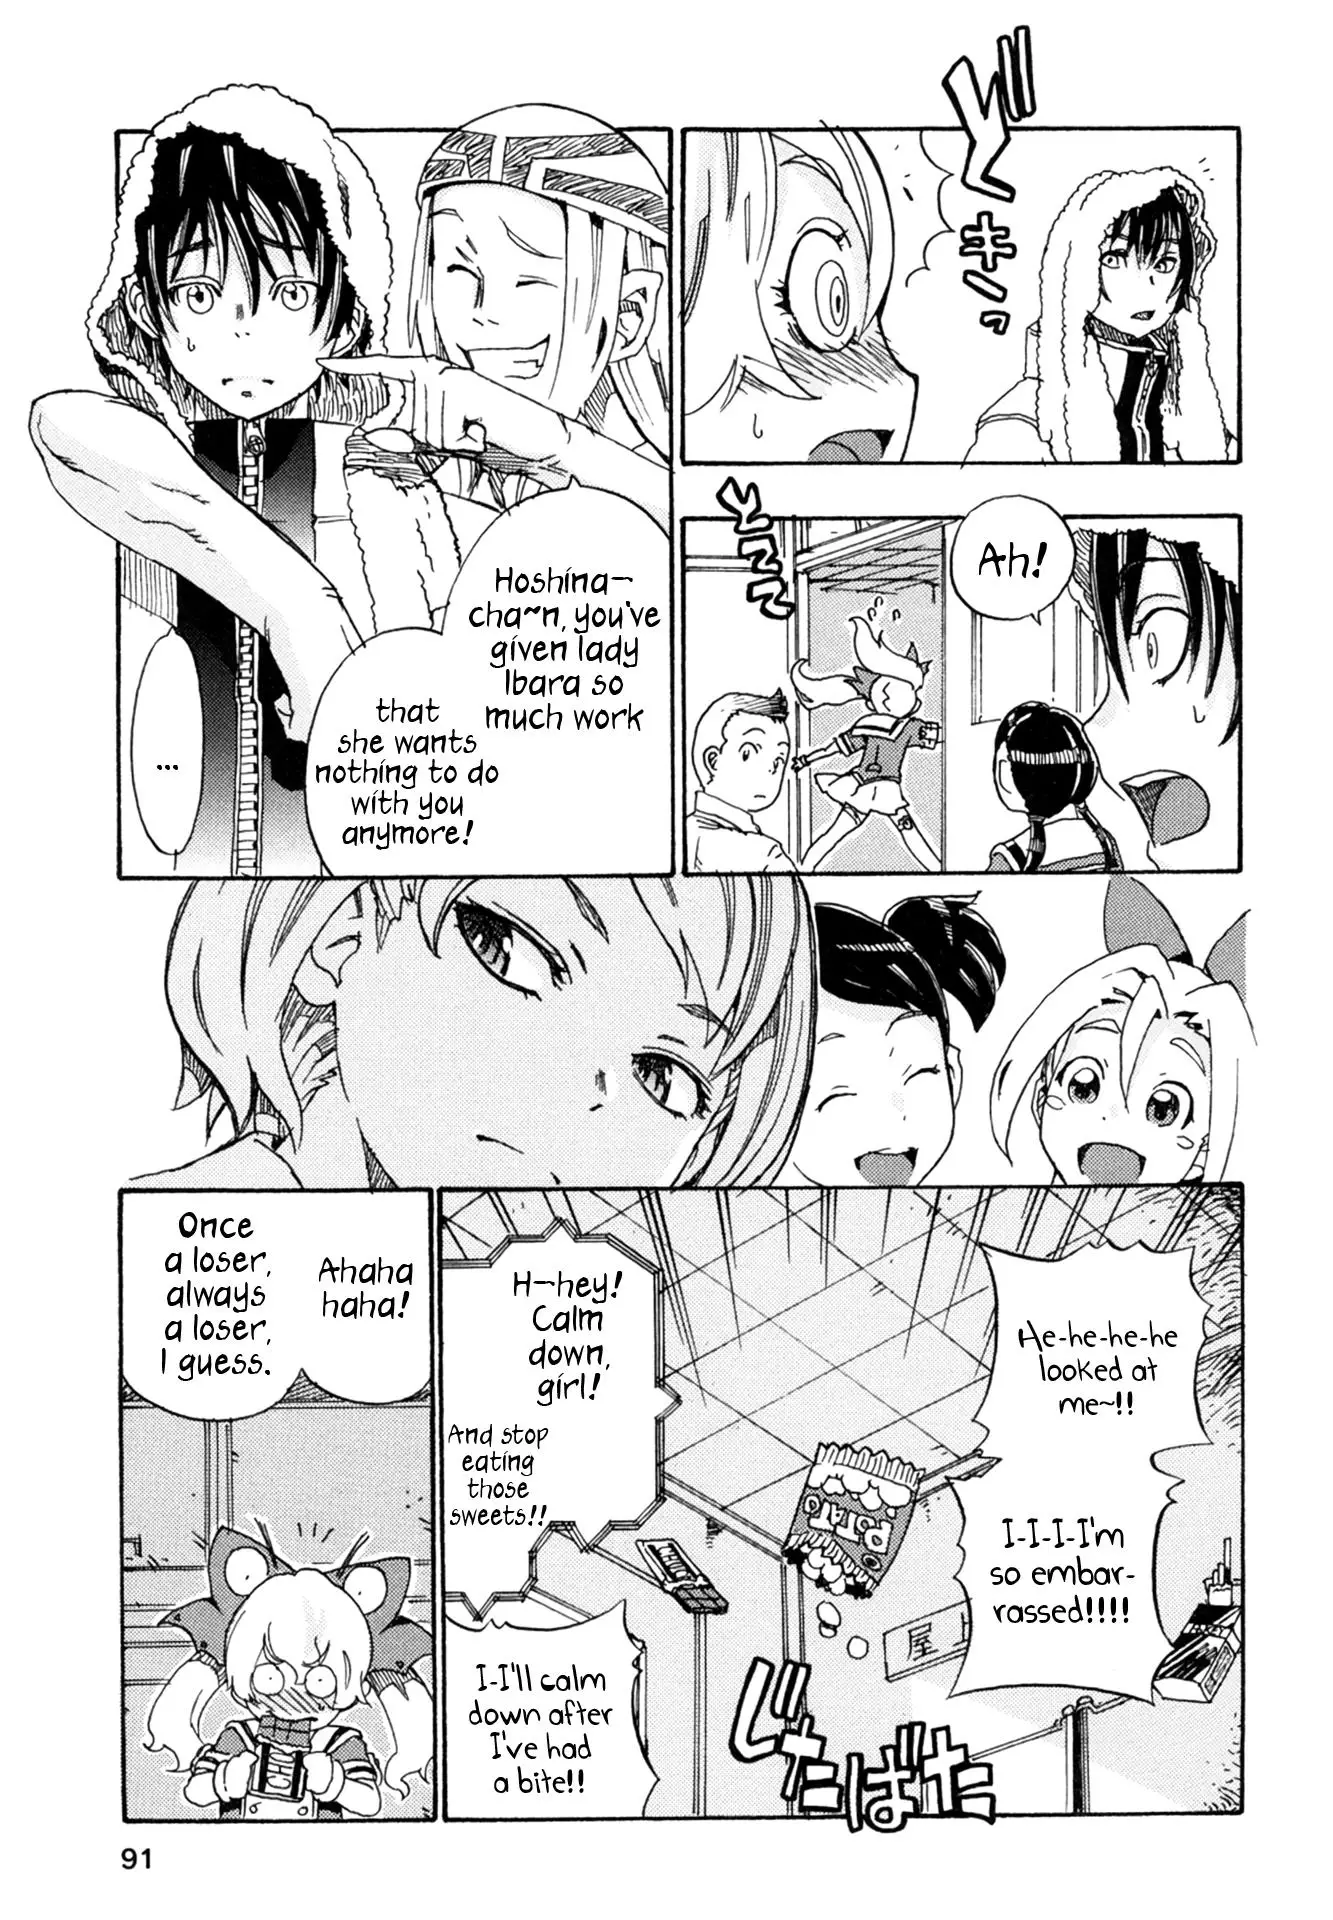 Oichii Tte Yutteyo. - 3 page 7-7f5ed859